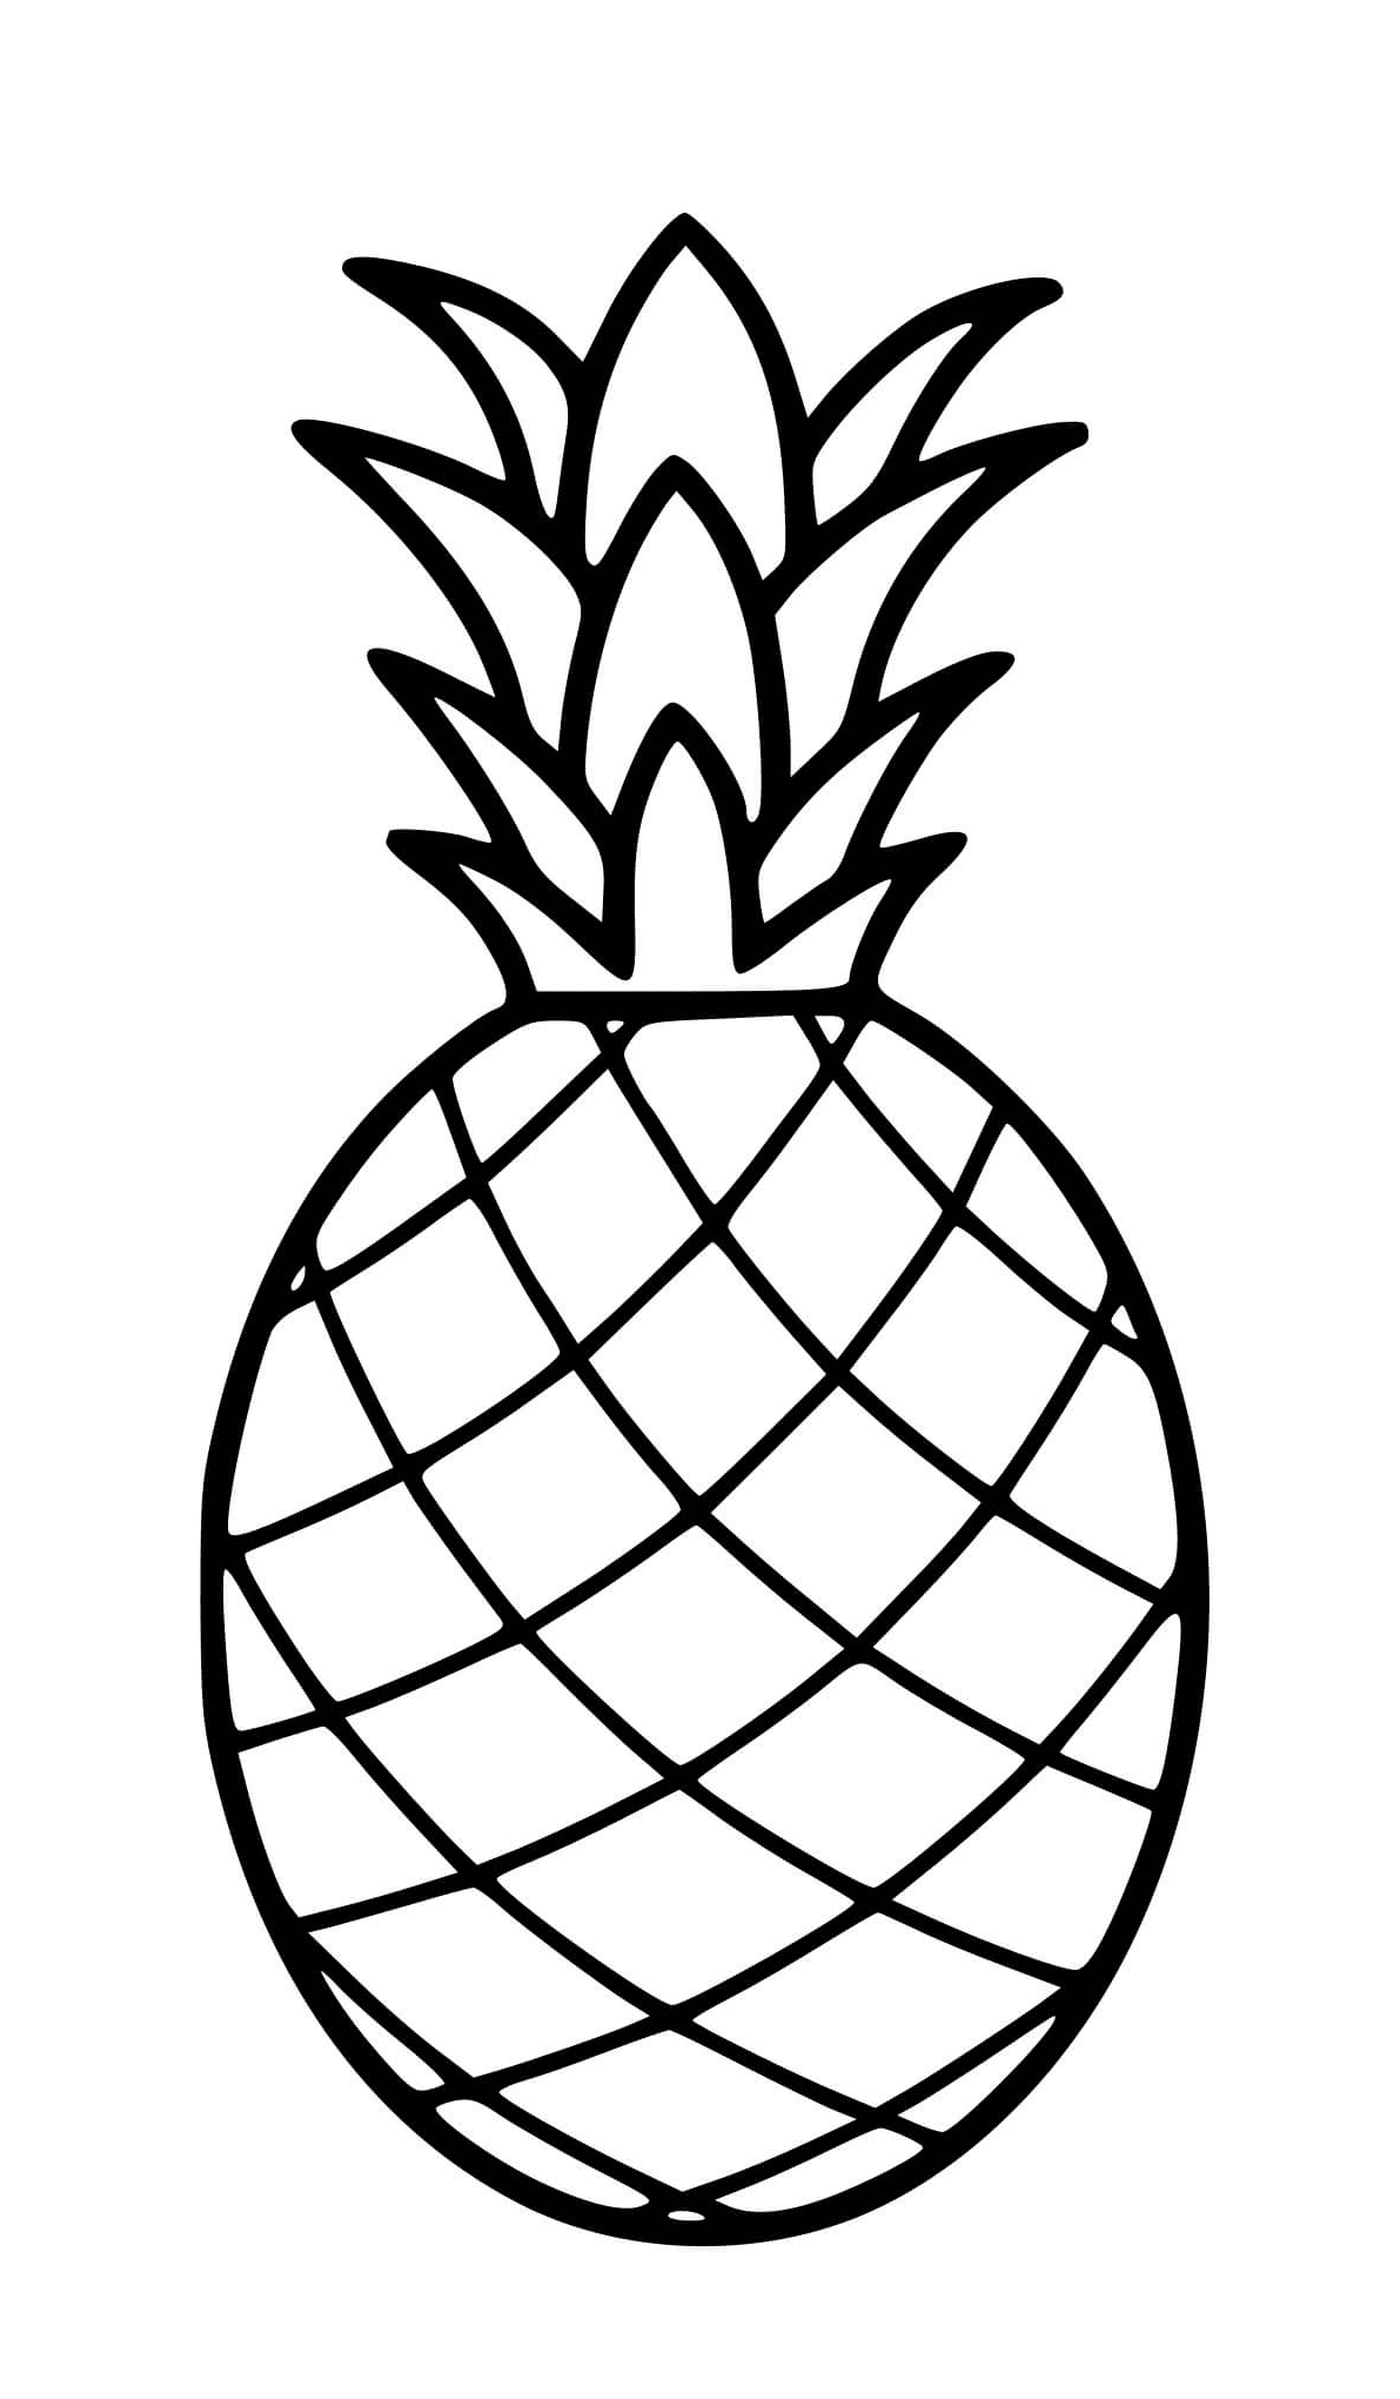  Un ananas disegnato realisticamente 